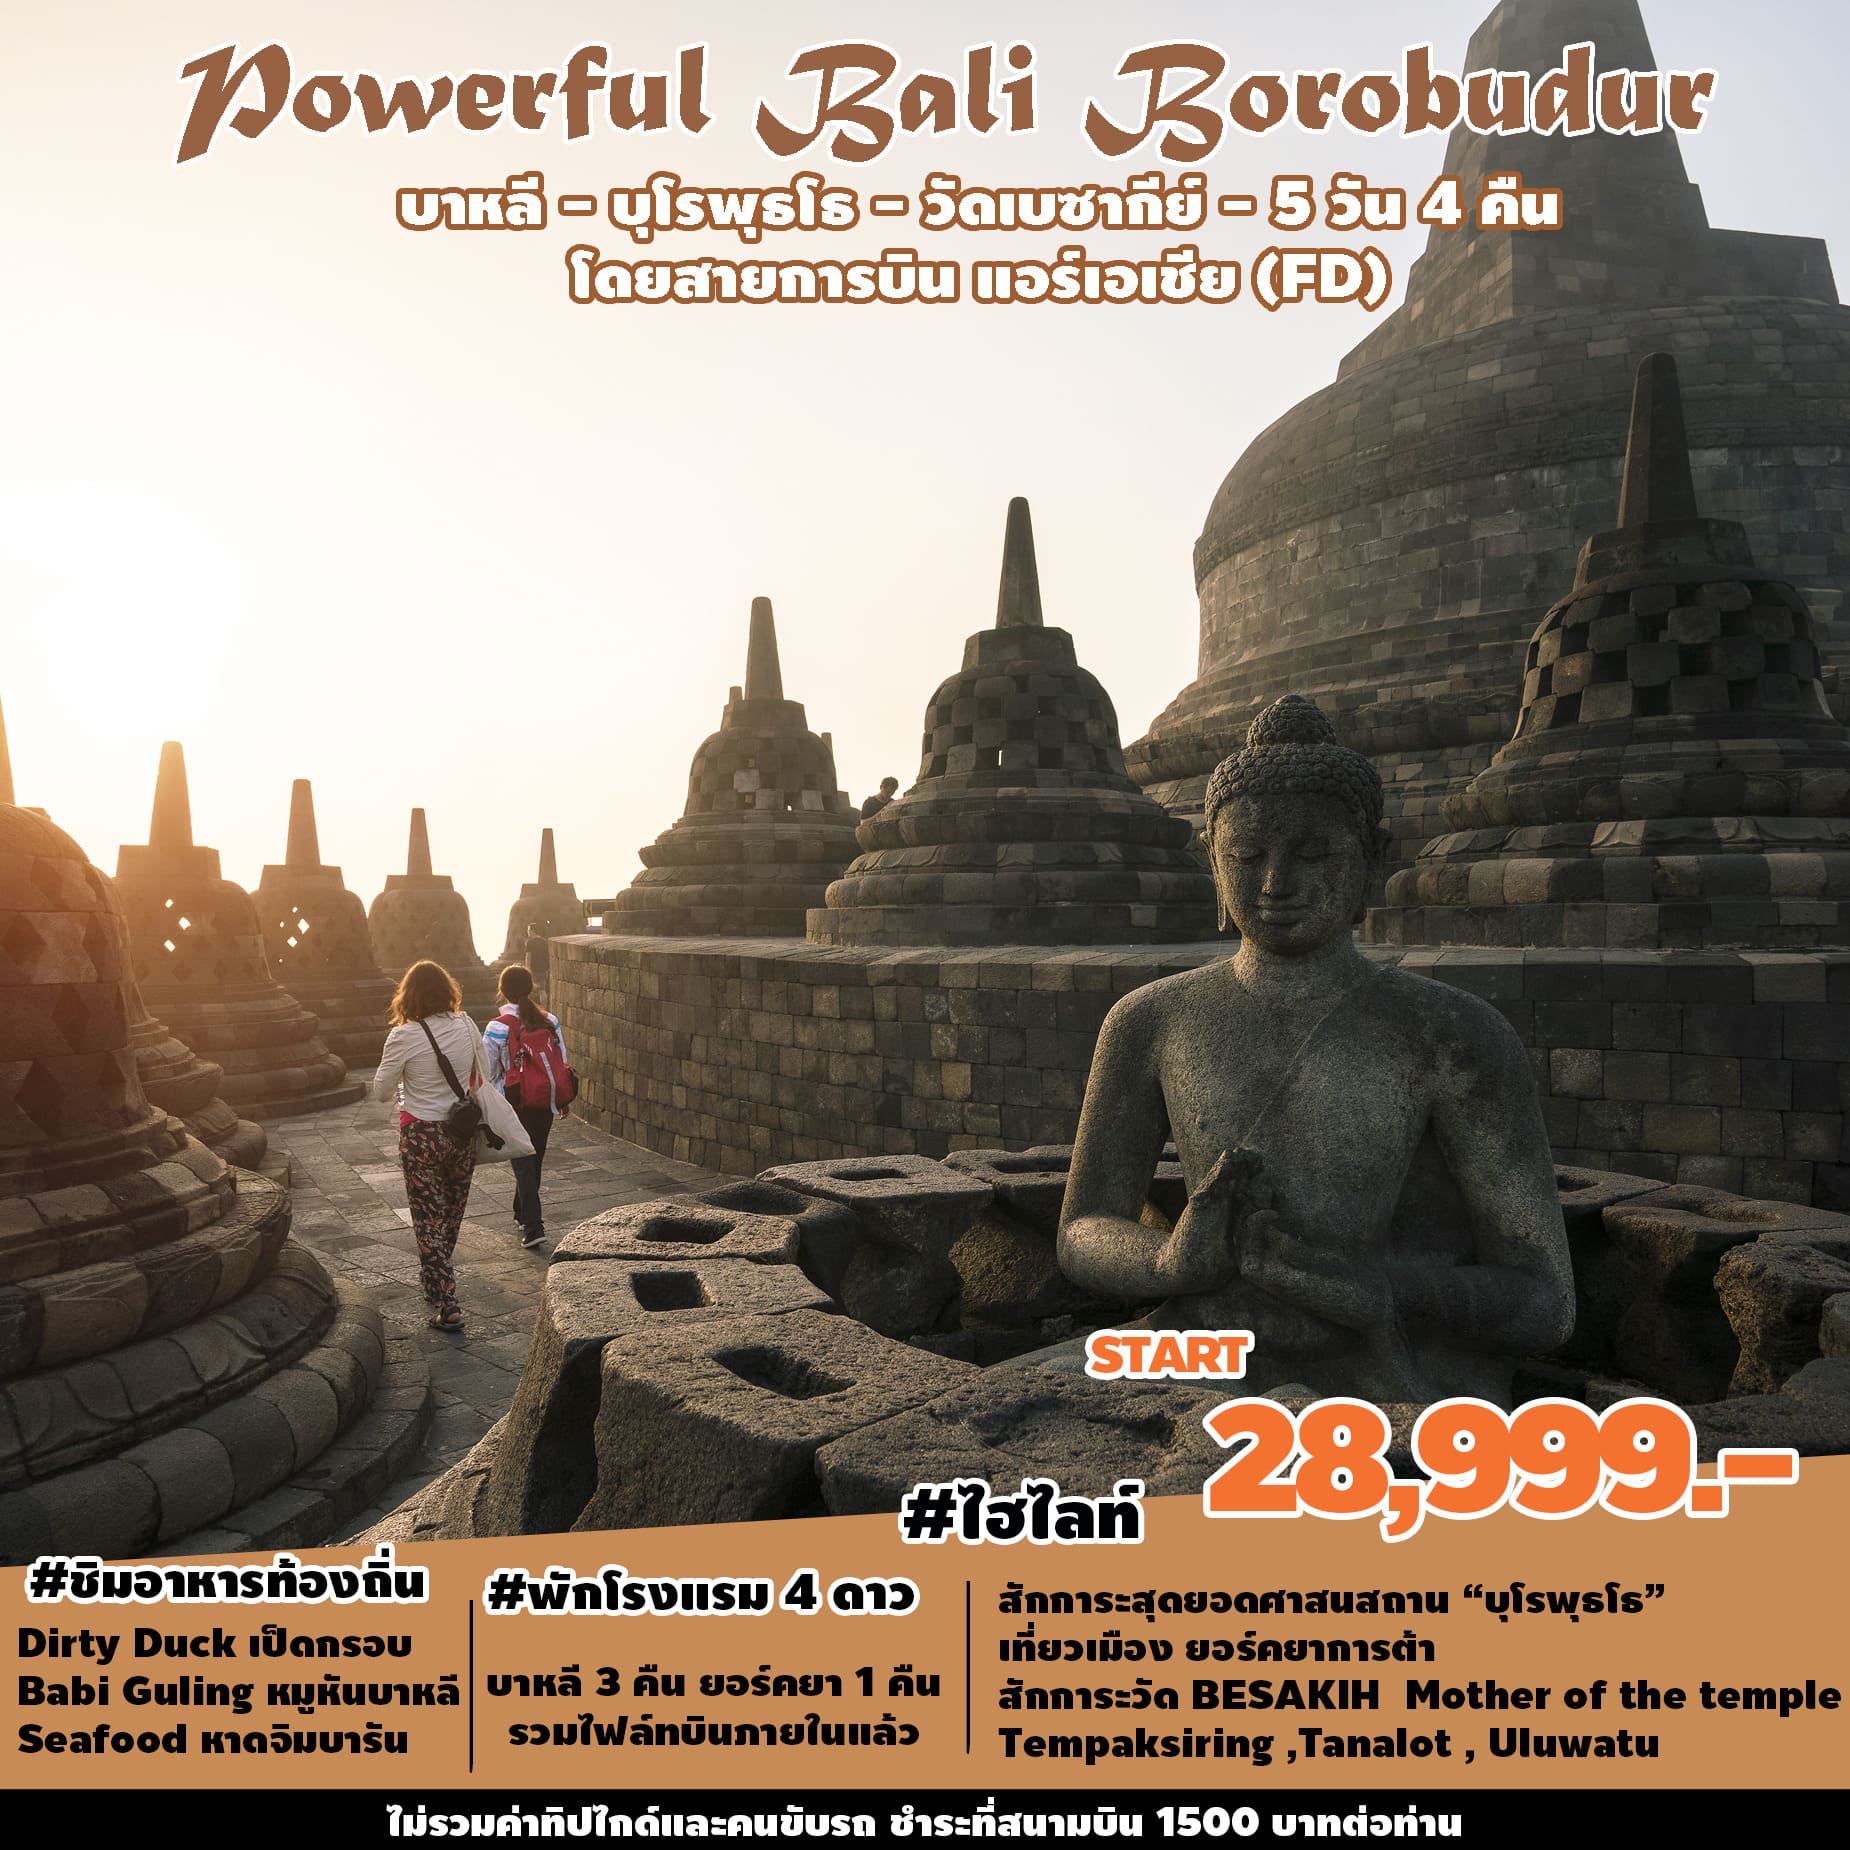 ทัวร์อินโดนีเซีย Powerful Bali Borobudur 5วัน 4คืน